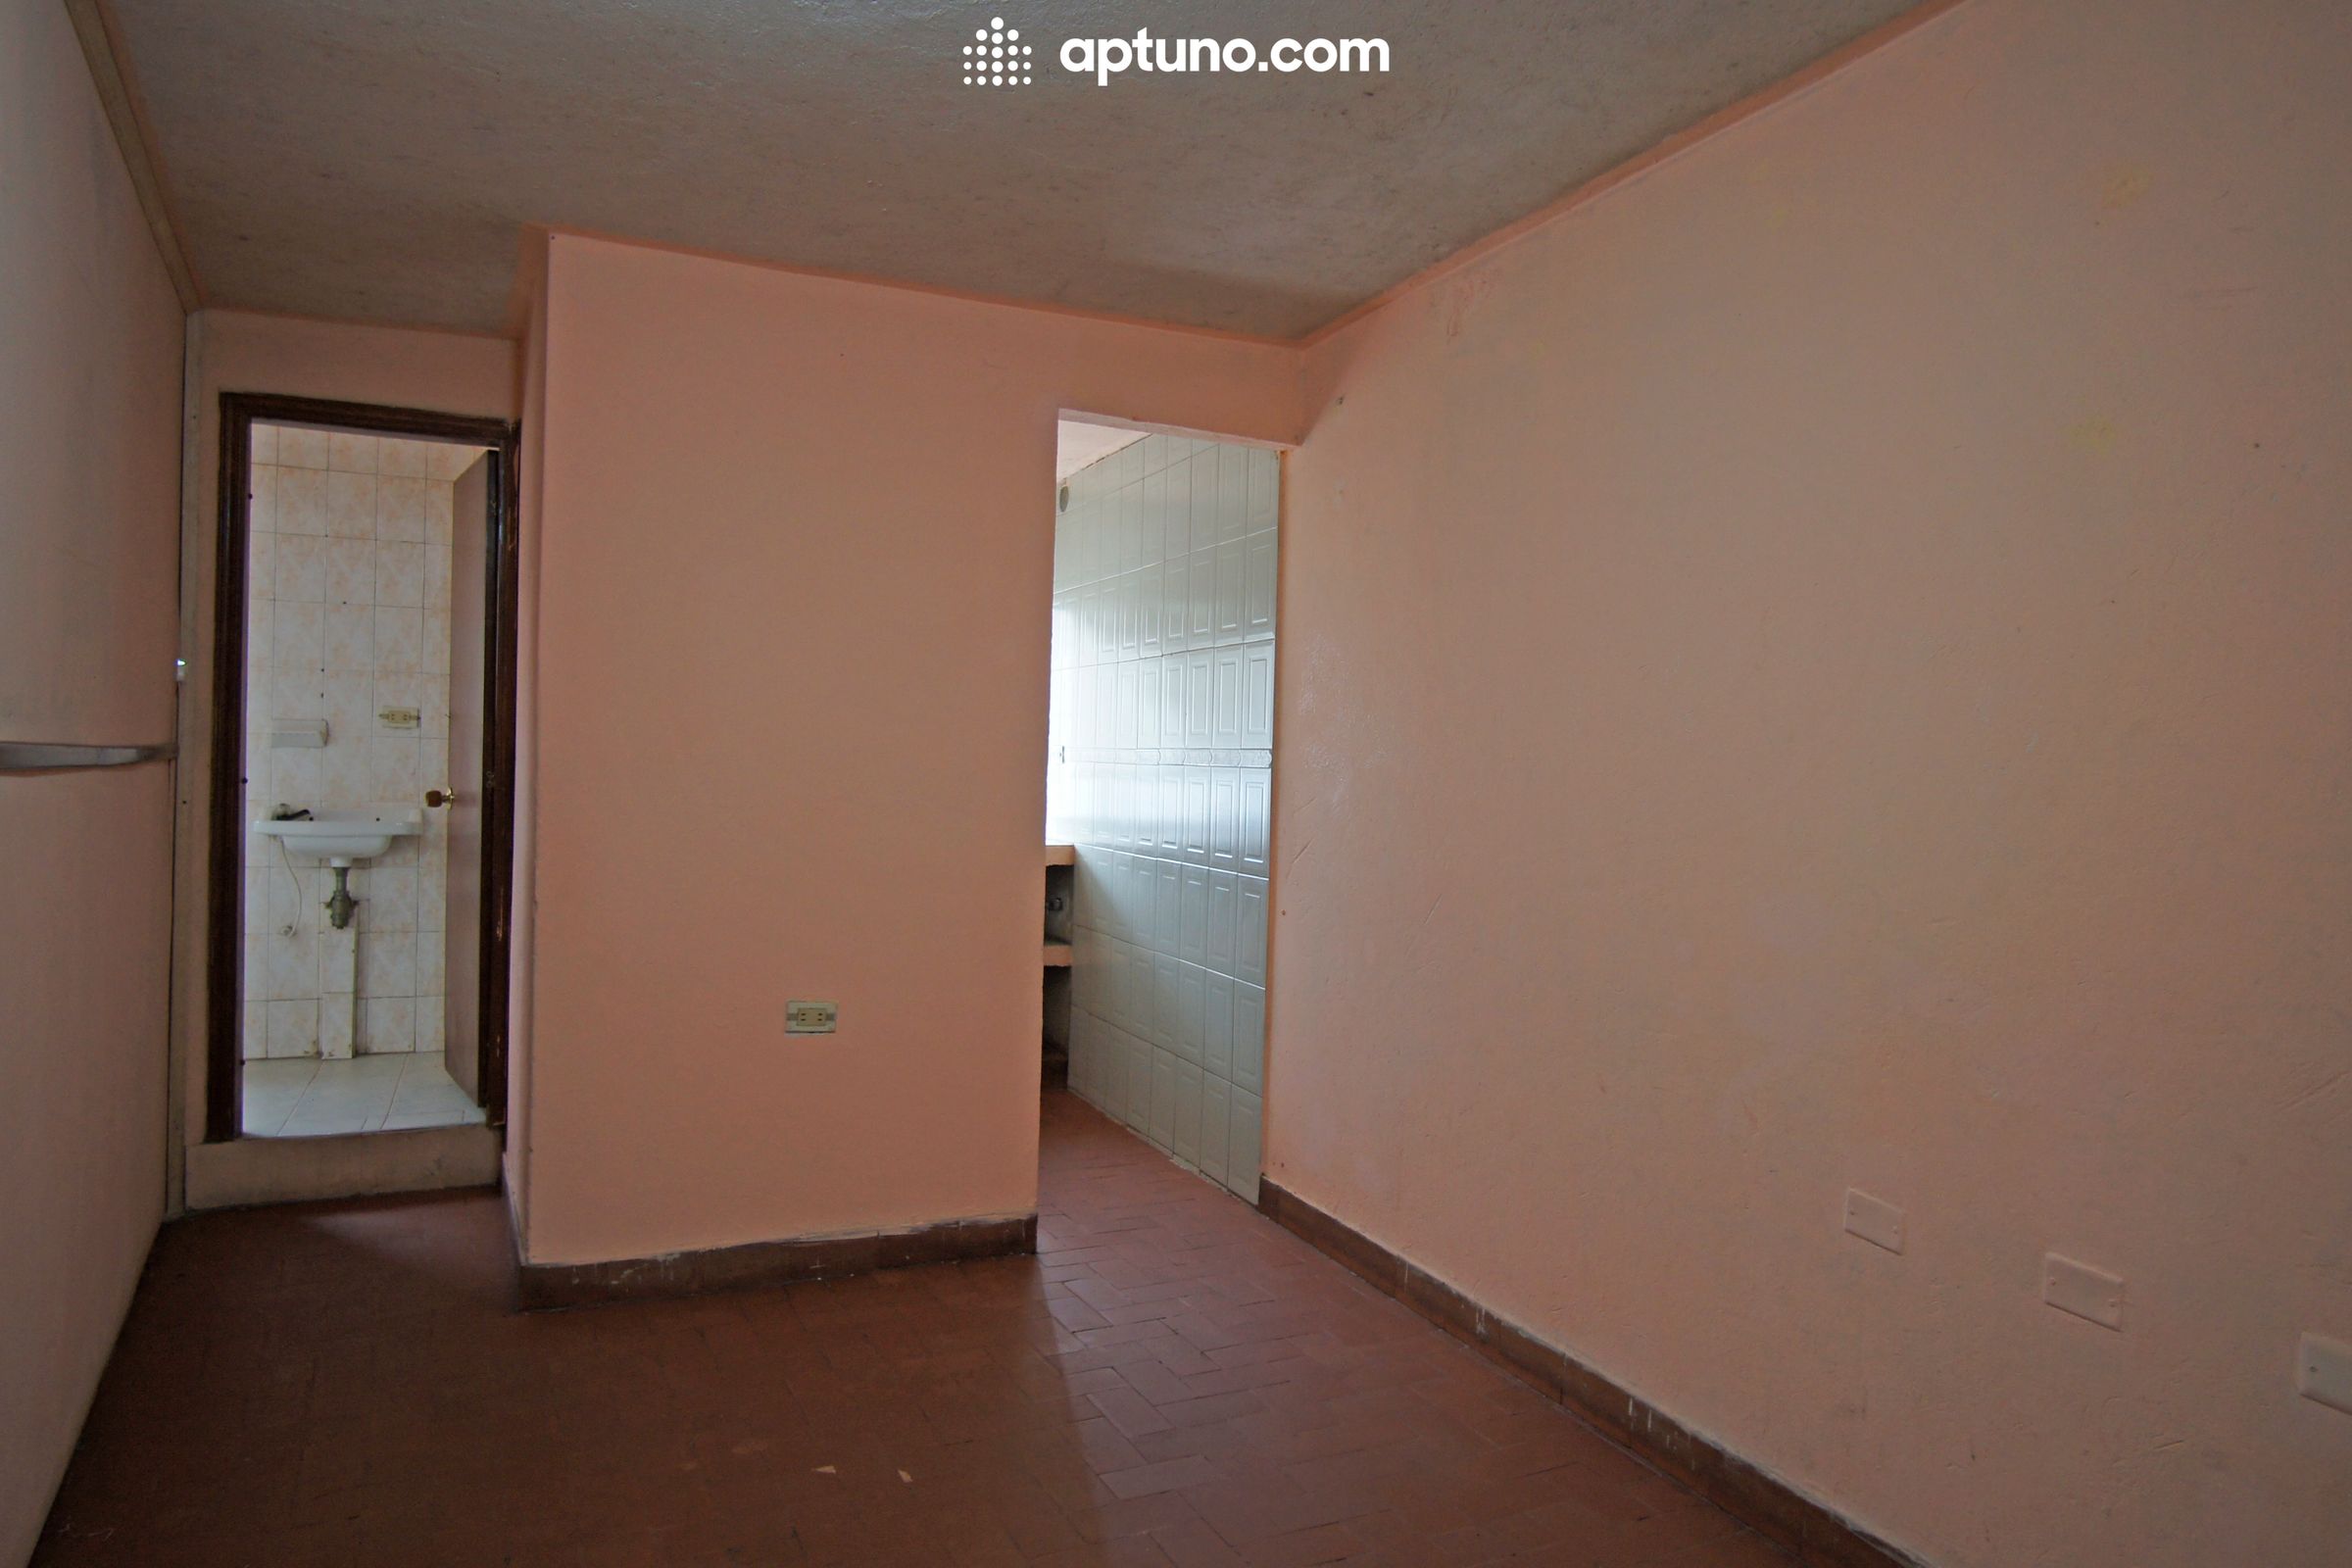 Apartamento en arriendo Bellavista Lucero Alto 52 m² - $ 600.000,00